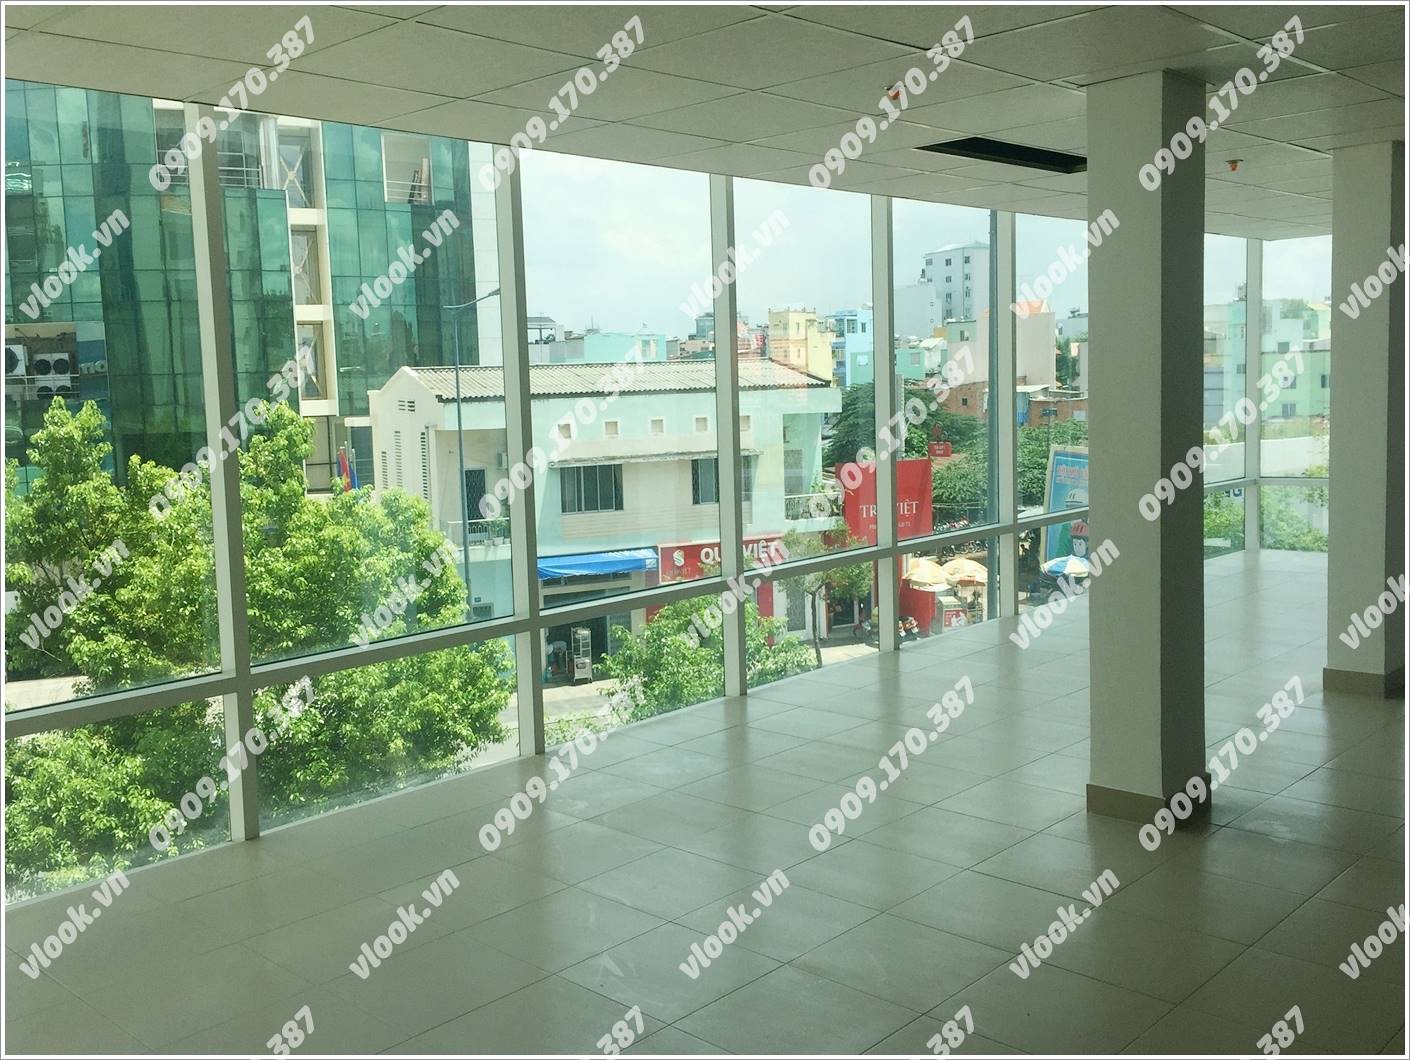 Cao ốc cho thuê văn phòng Anh Đăng Building Nam Kỳ Khởi Nghĩa Quận 3 TP.HCM - vlook.vn